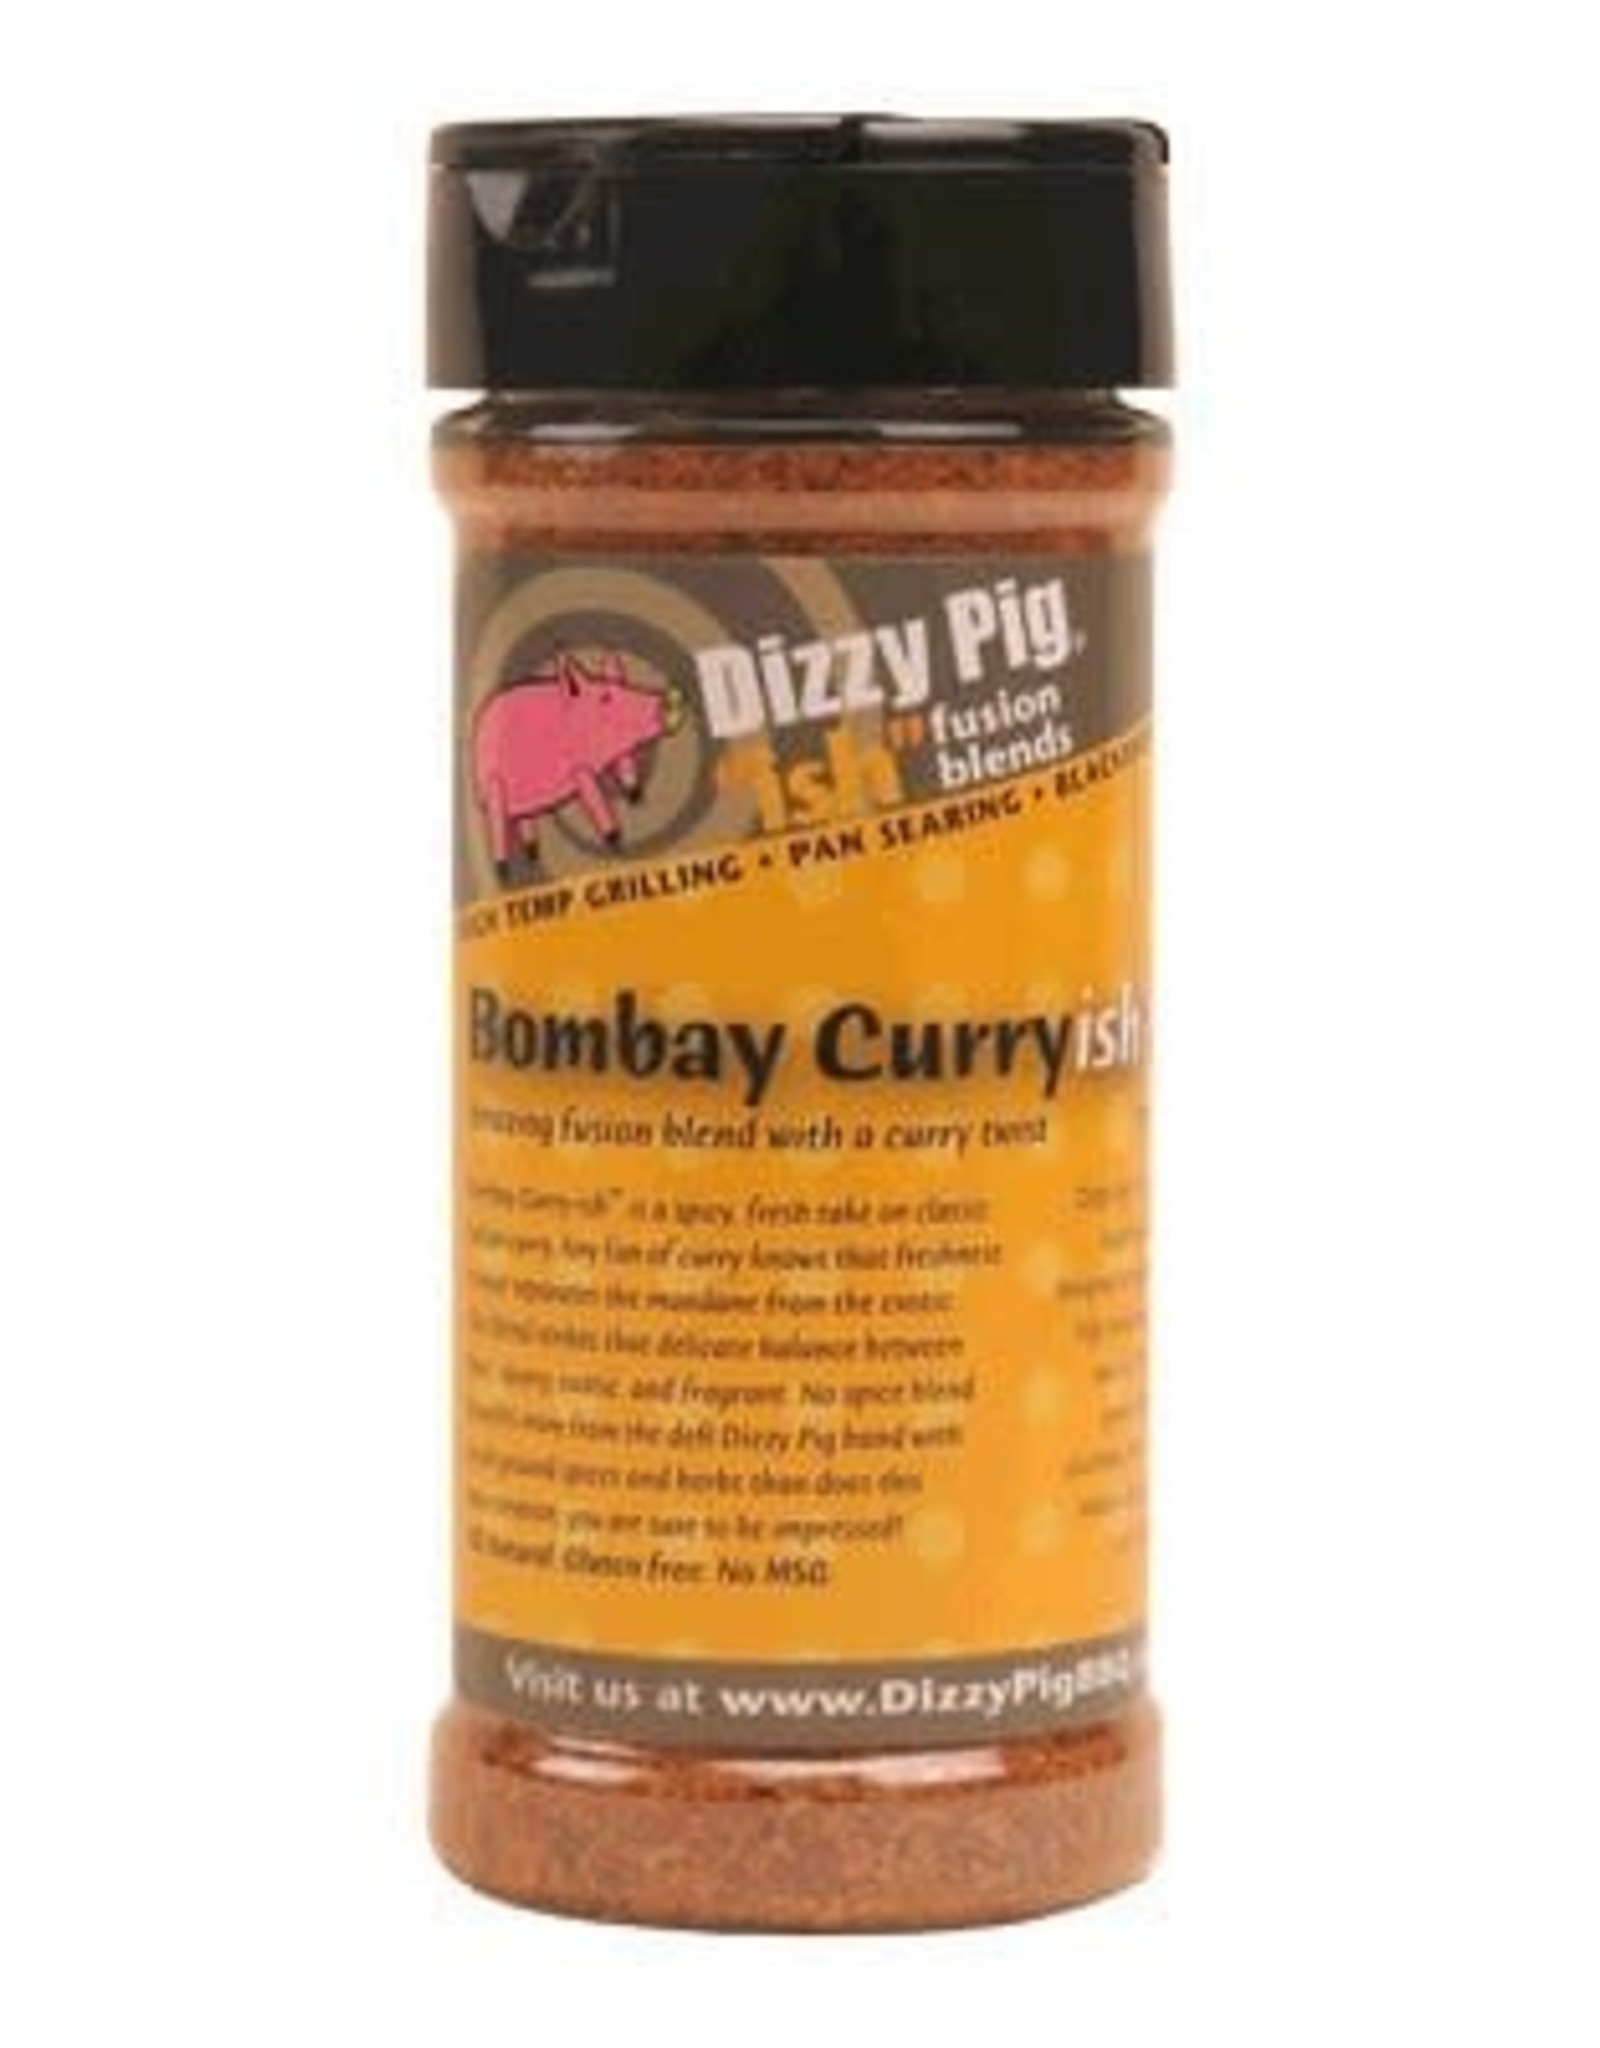 Dizzy Pig Dizzy Pig - Bombay Curry-ish 8oz